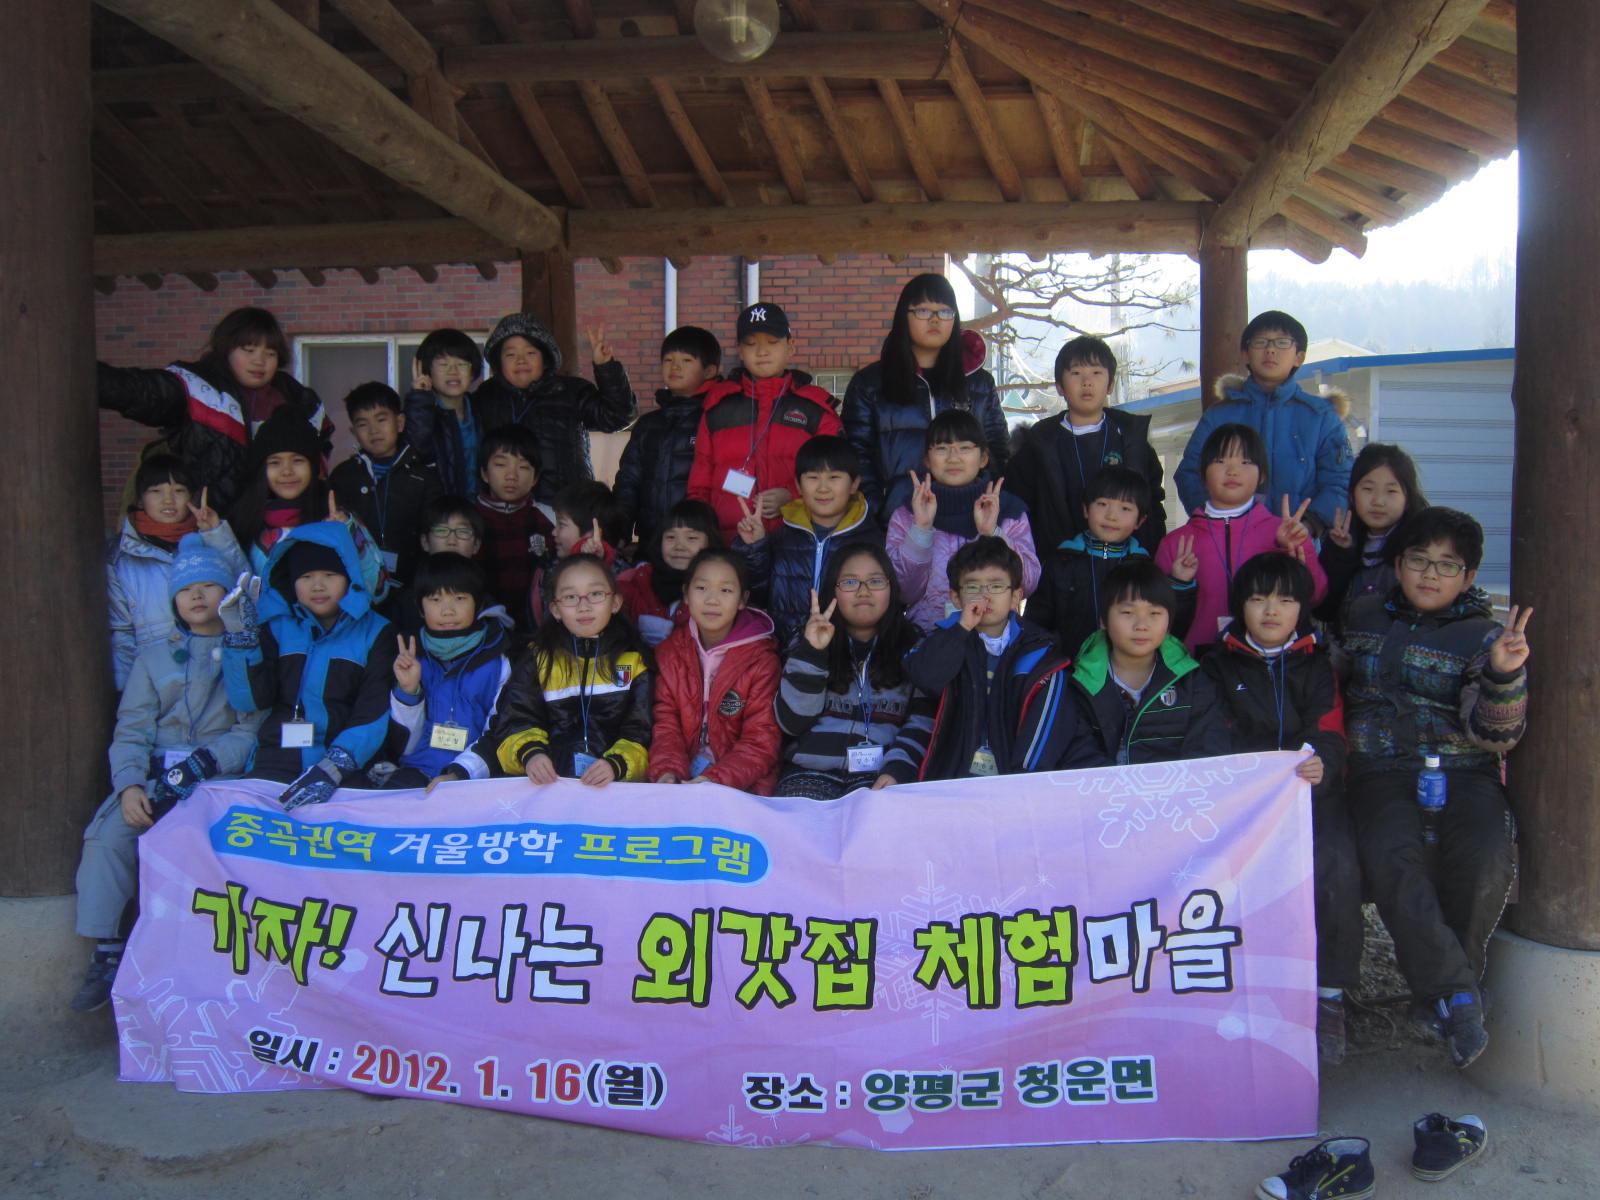 중곡권역 외갓집체험프로그램 참가 초등학생 단체사진